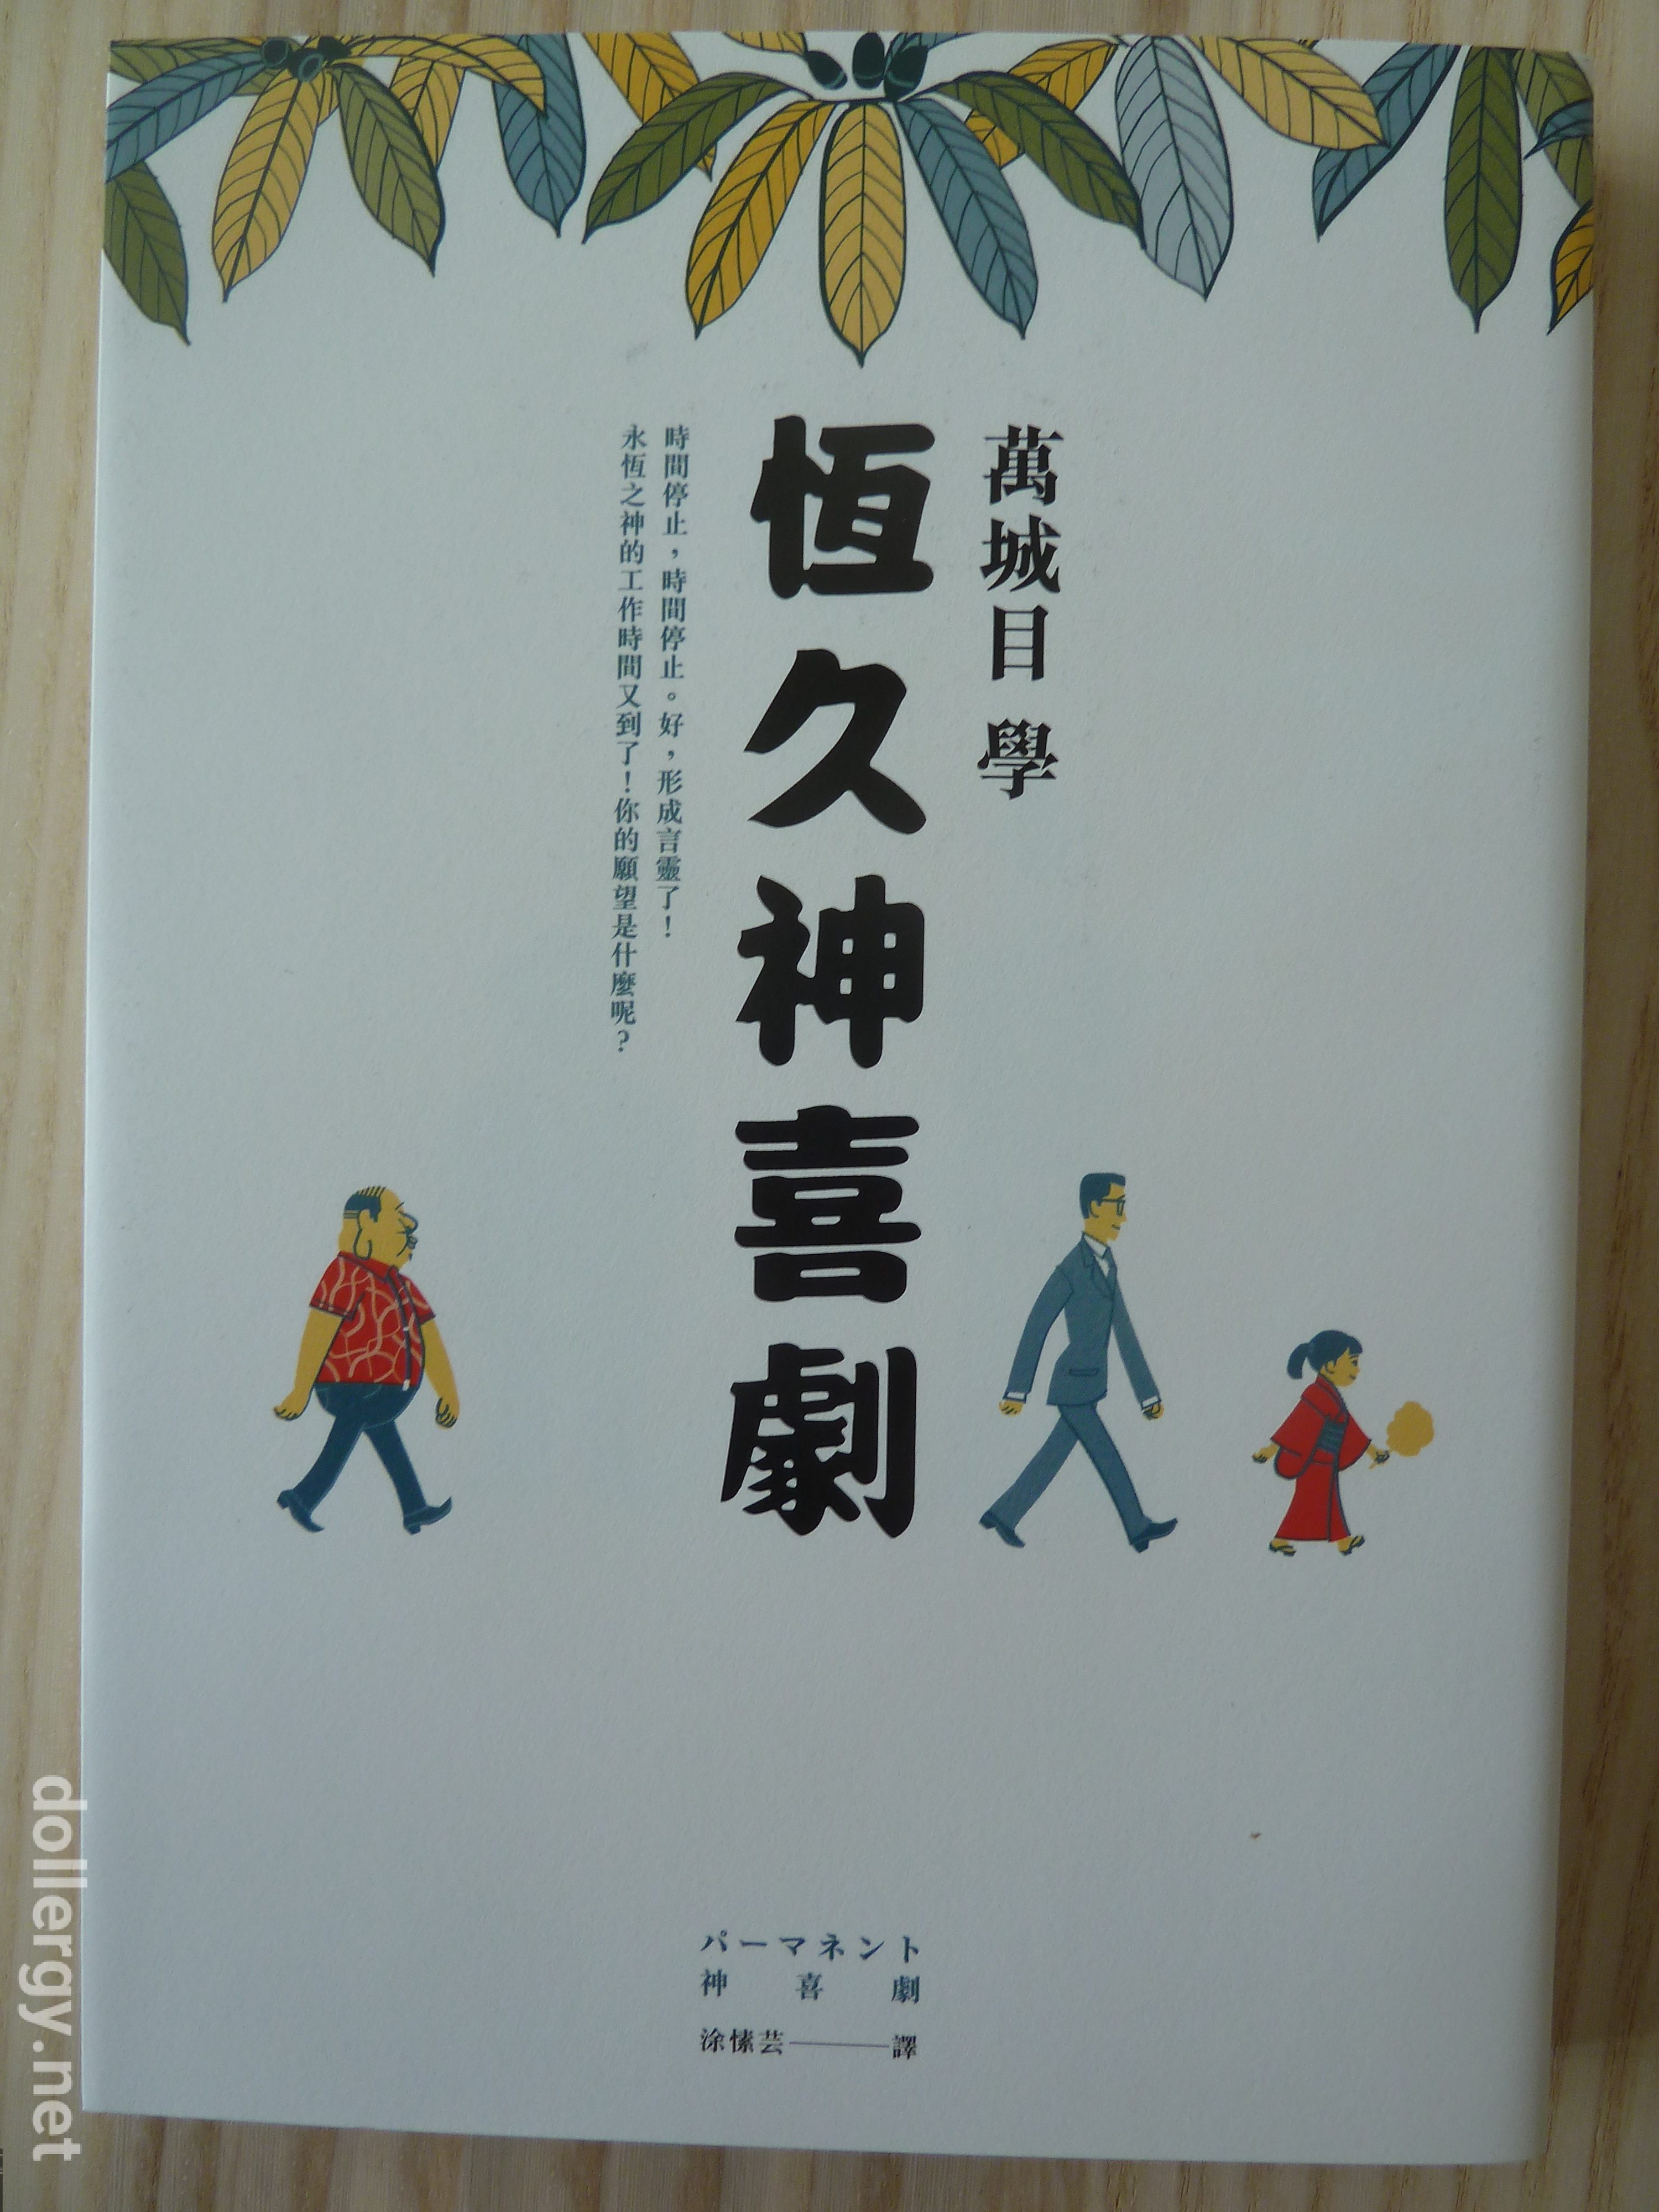 恒久神喜劇 Book Cover